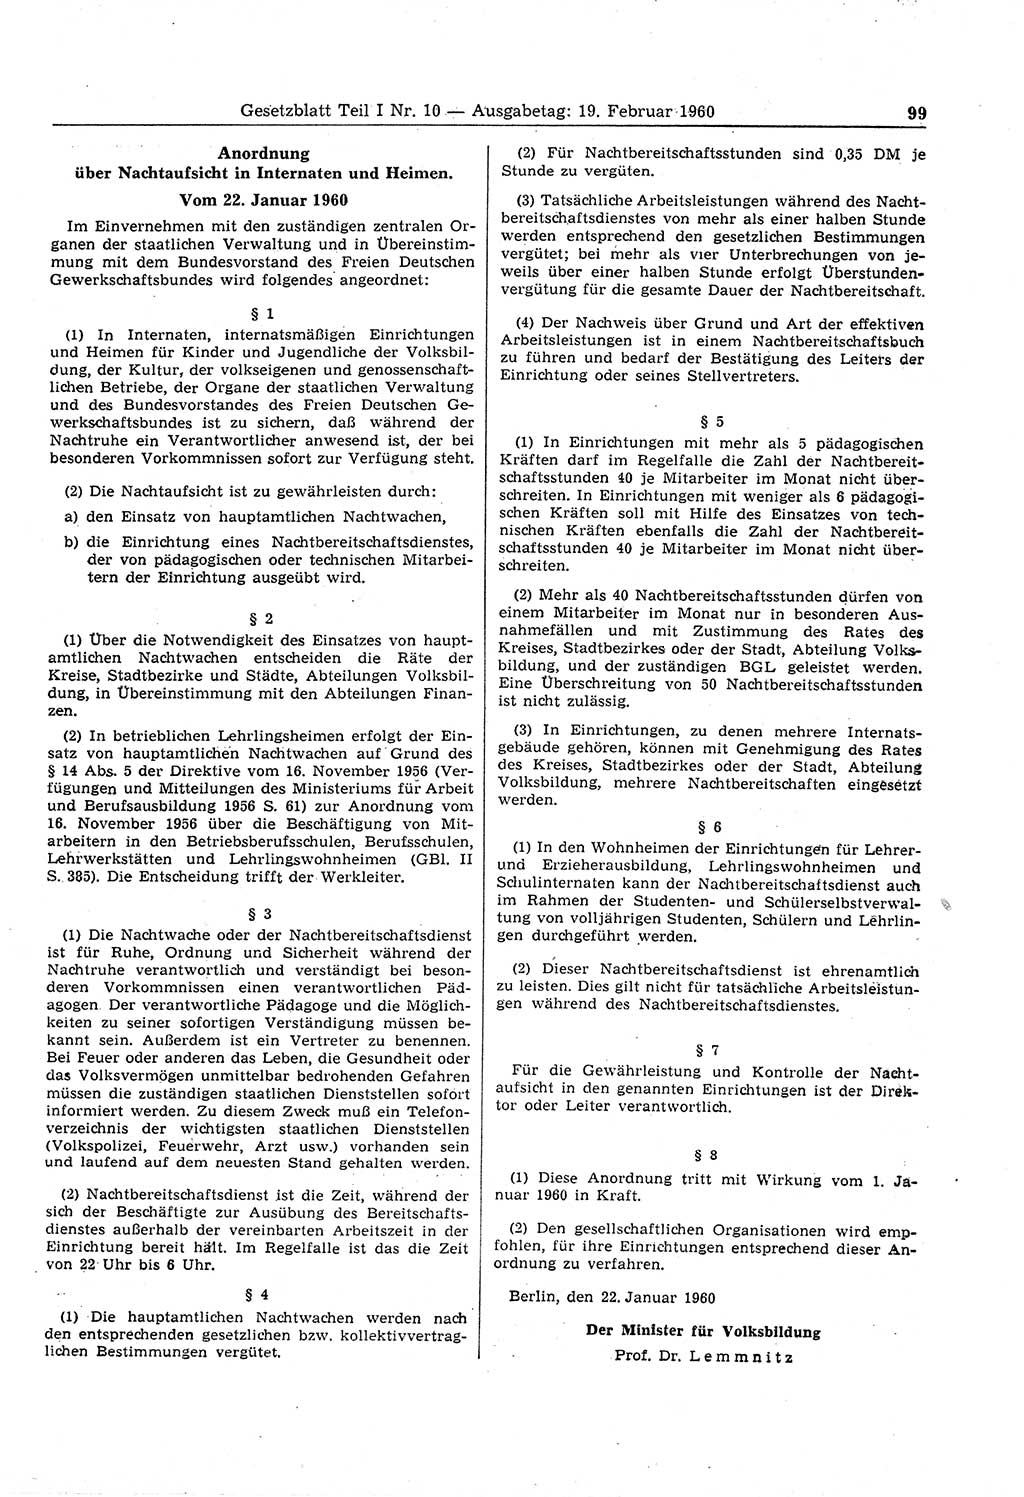 Gesetzblatt (GBl.) der Deutschen Demokratischen Republik (DDR) Teil Ⅰ 1960, Seite 99 (GBl. DDR Ⅰ 1960, S. 99)